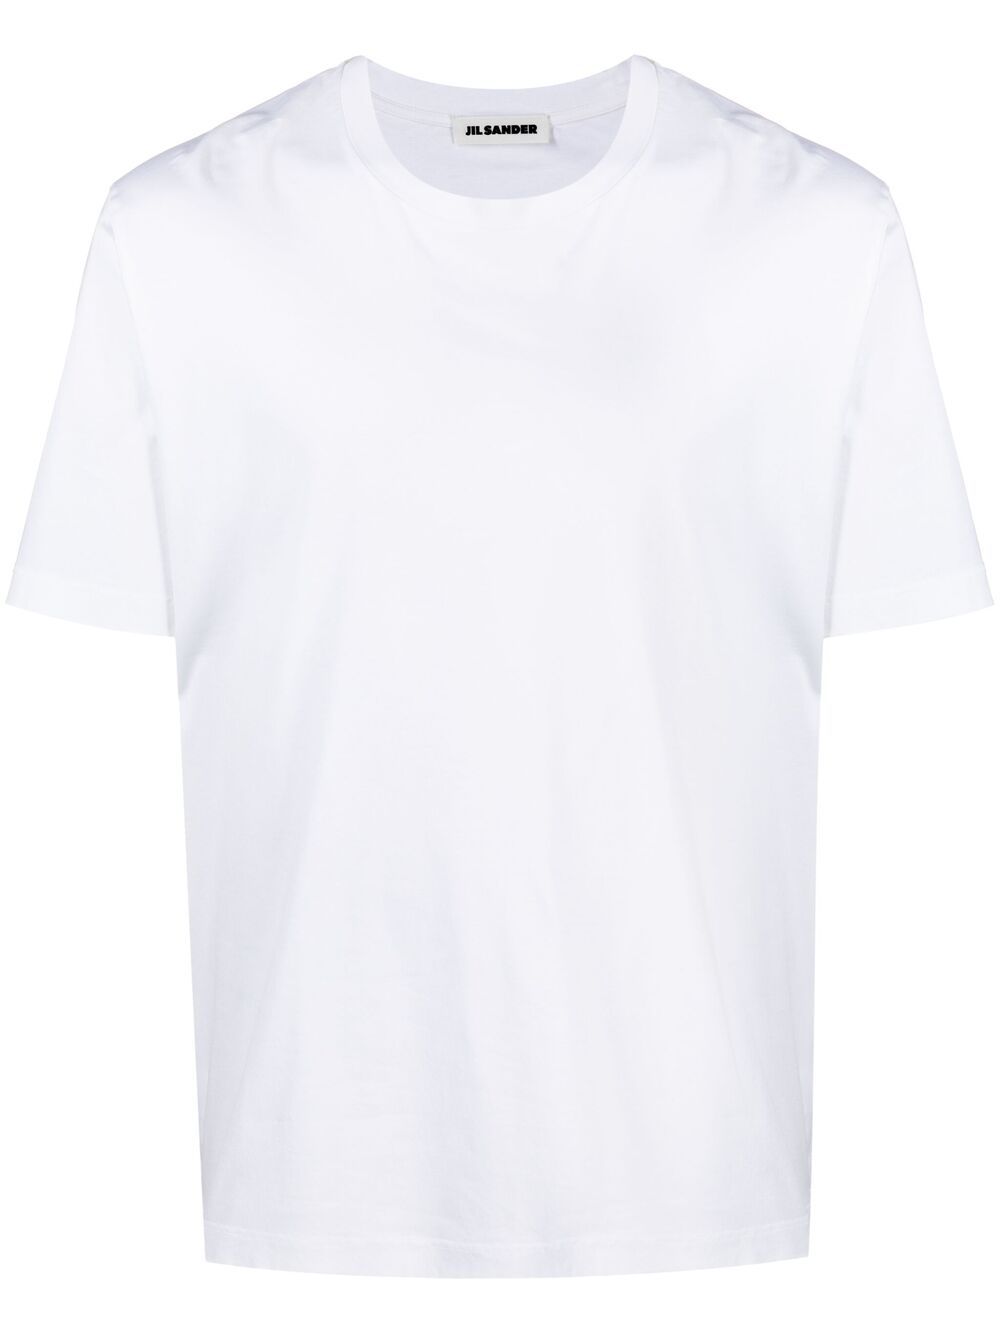 фото Jil sander футболка с короткими рукавами